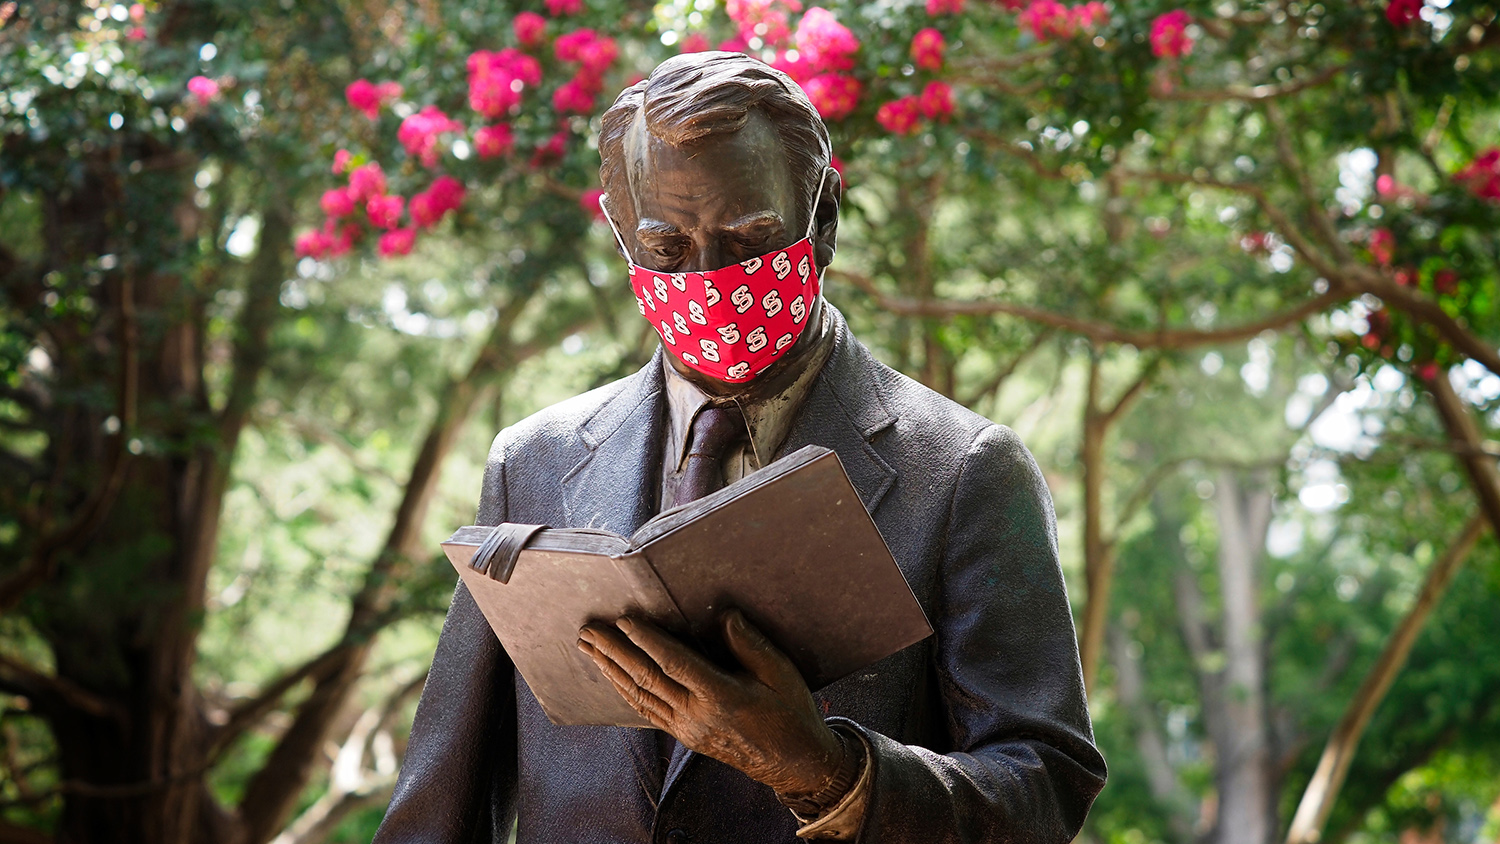 strolling professor statue wearing mask